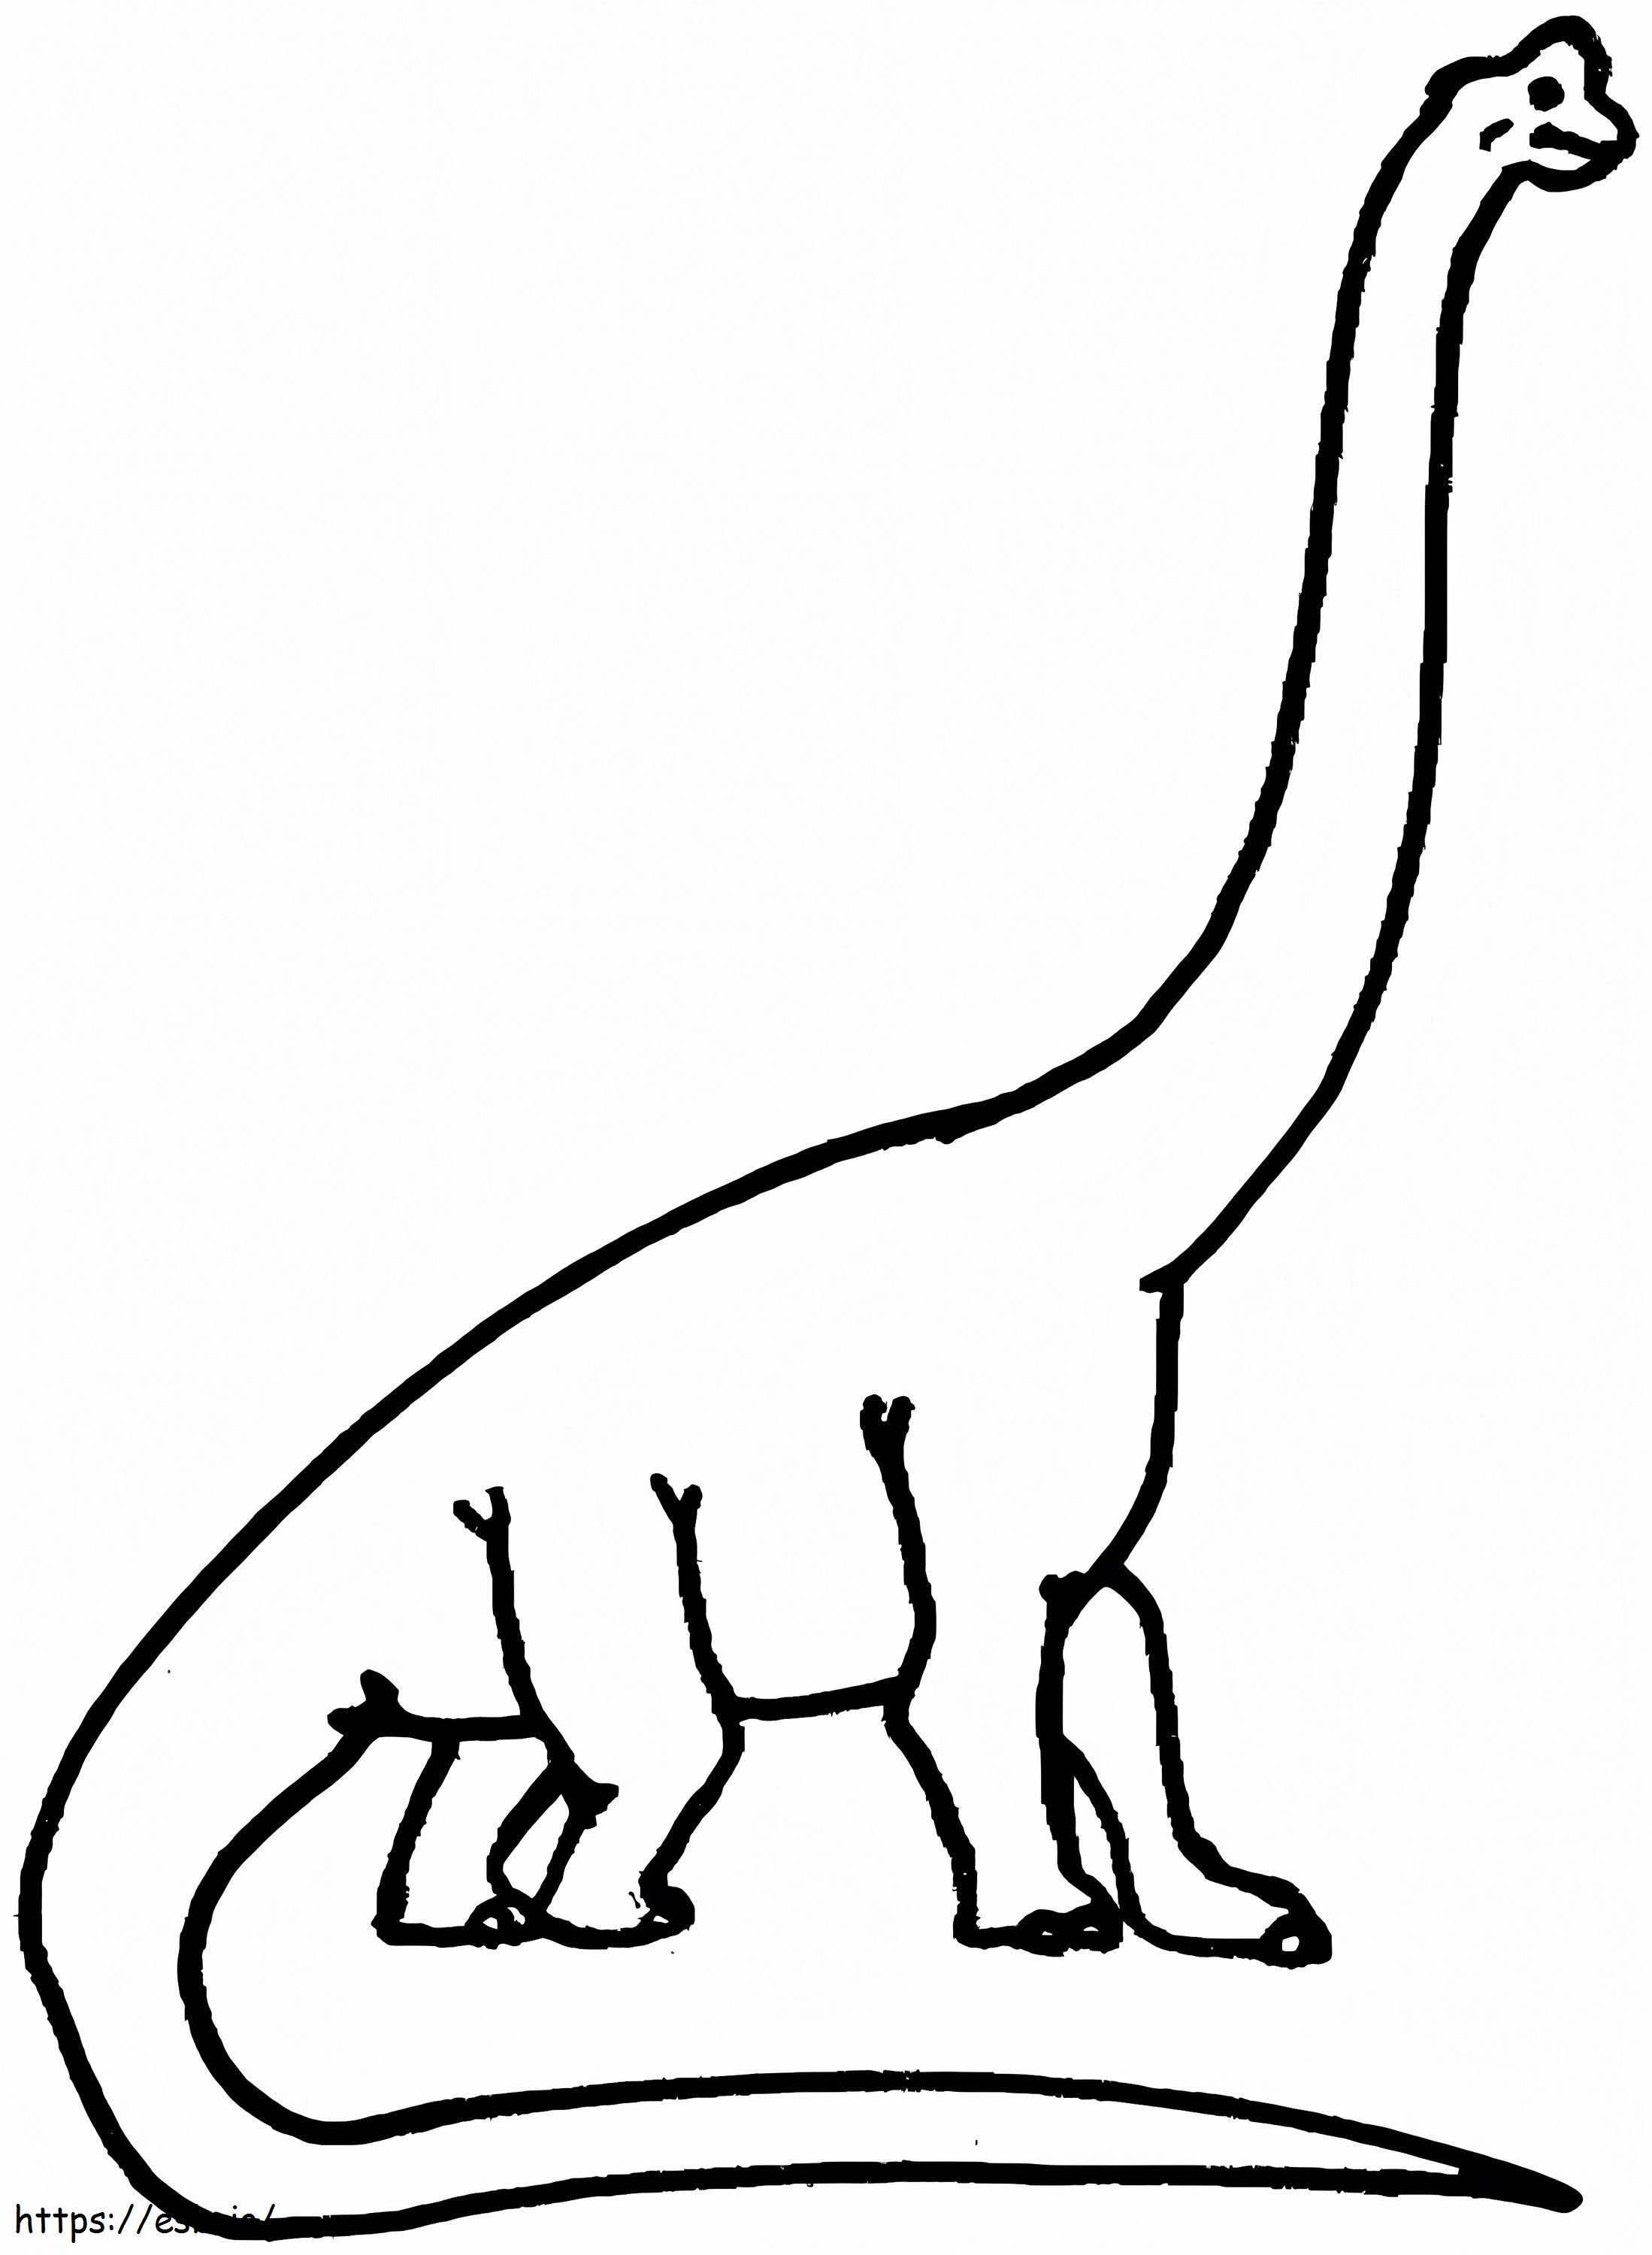 Brachiosaur coloring page